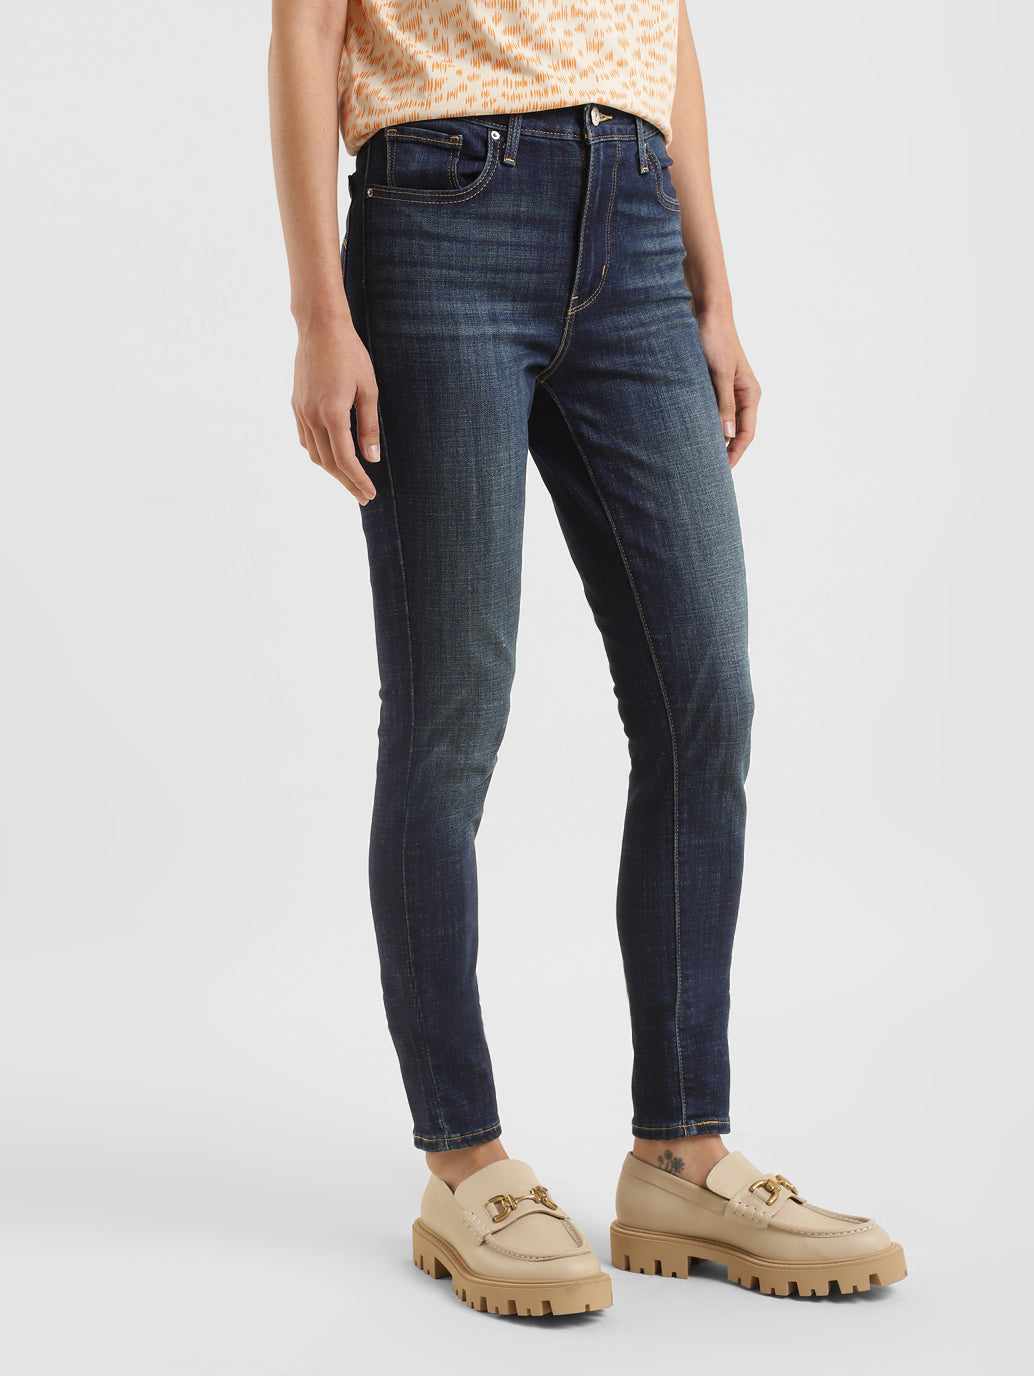  Lucky Brand Girls' Stretch Denim Jeans, Skinny Fit